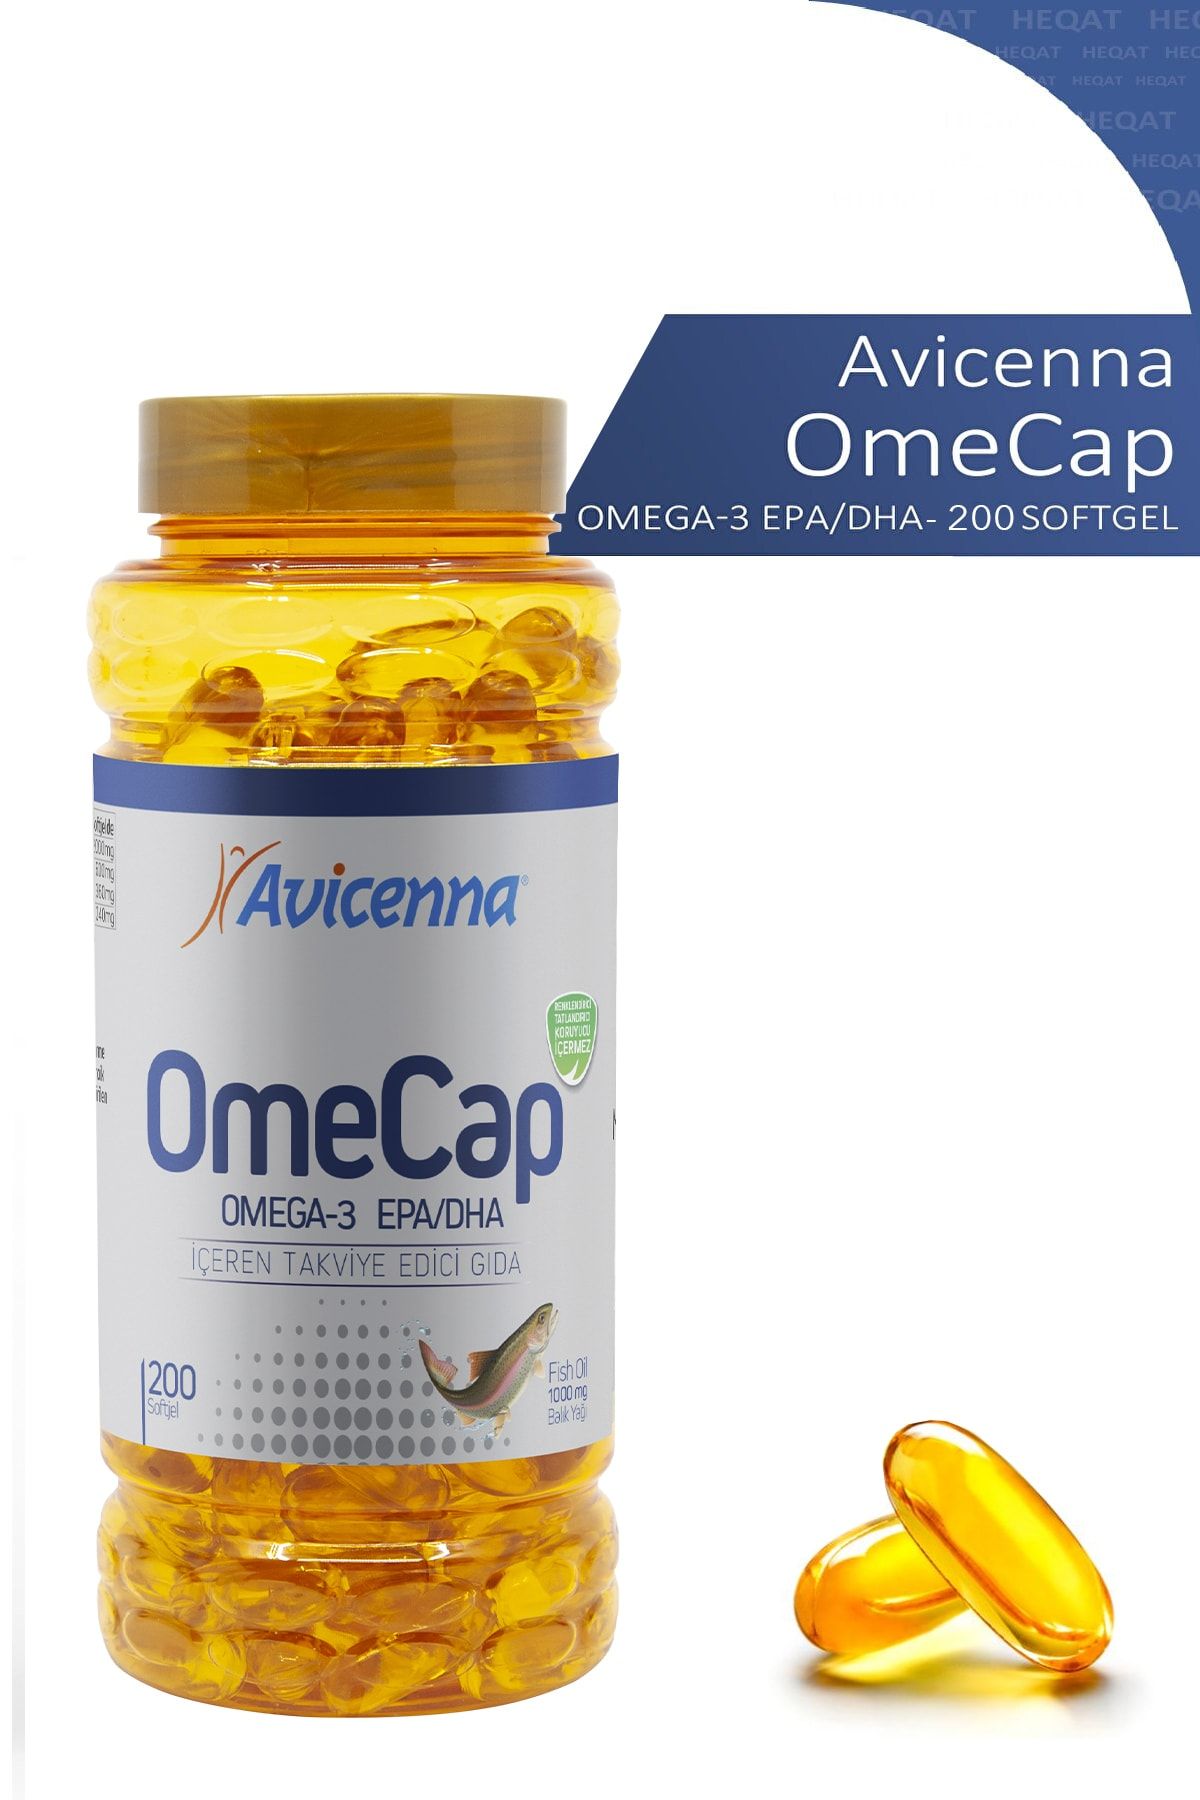 Avicenna Omecap - Omega 3 1000 Mg Içeren Takviye Edici Gıda - 200 Softjel - 8690140930330